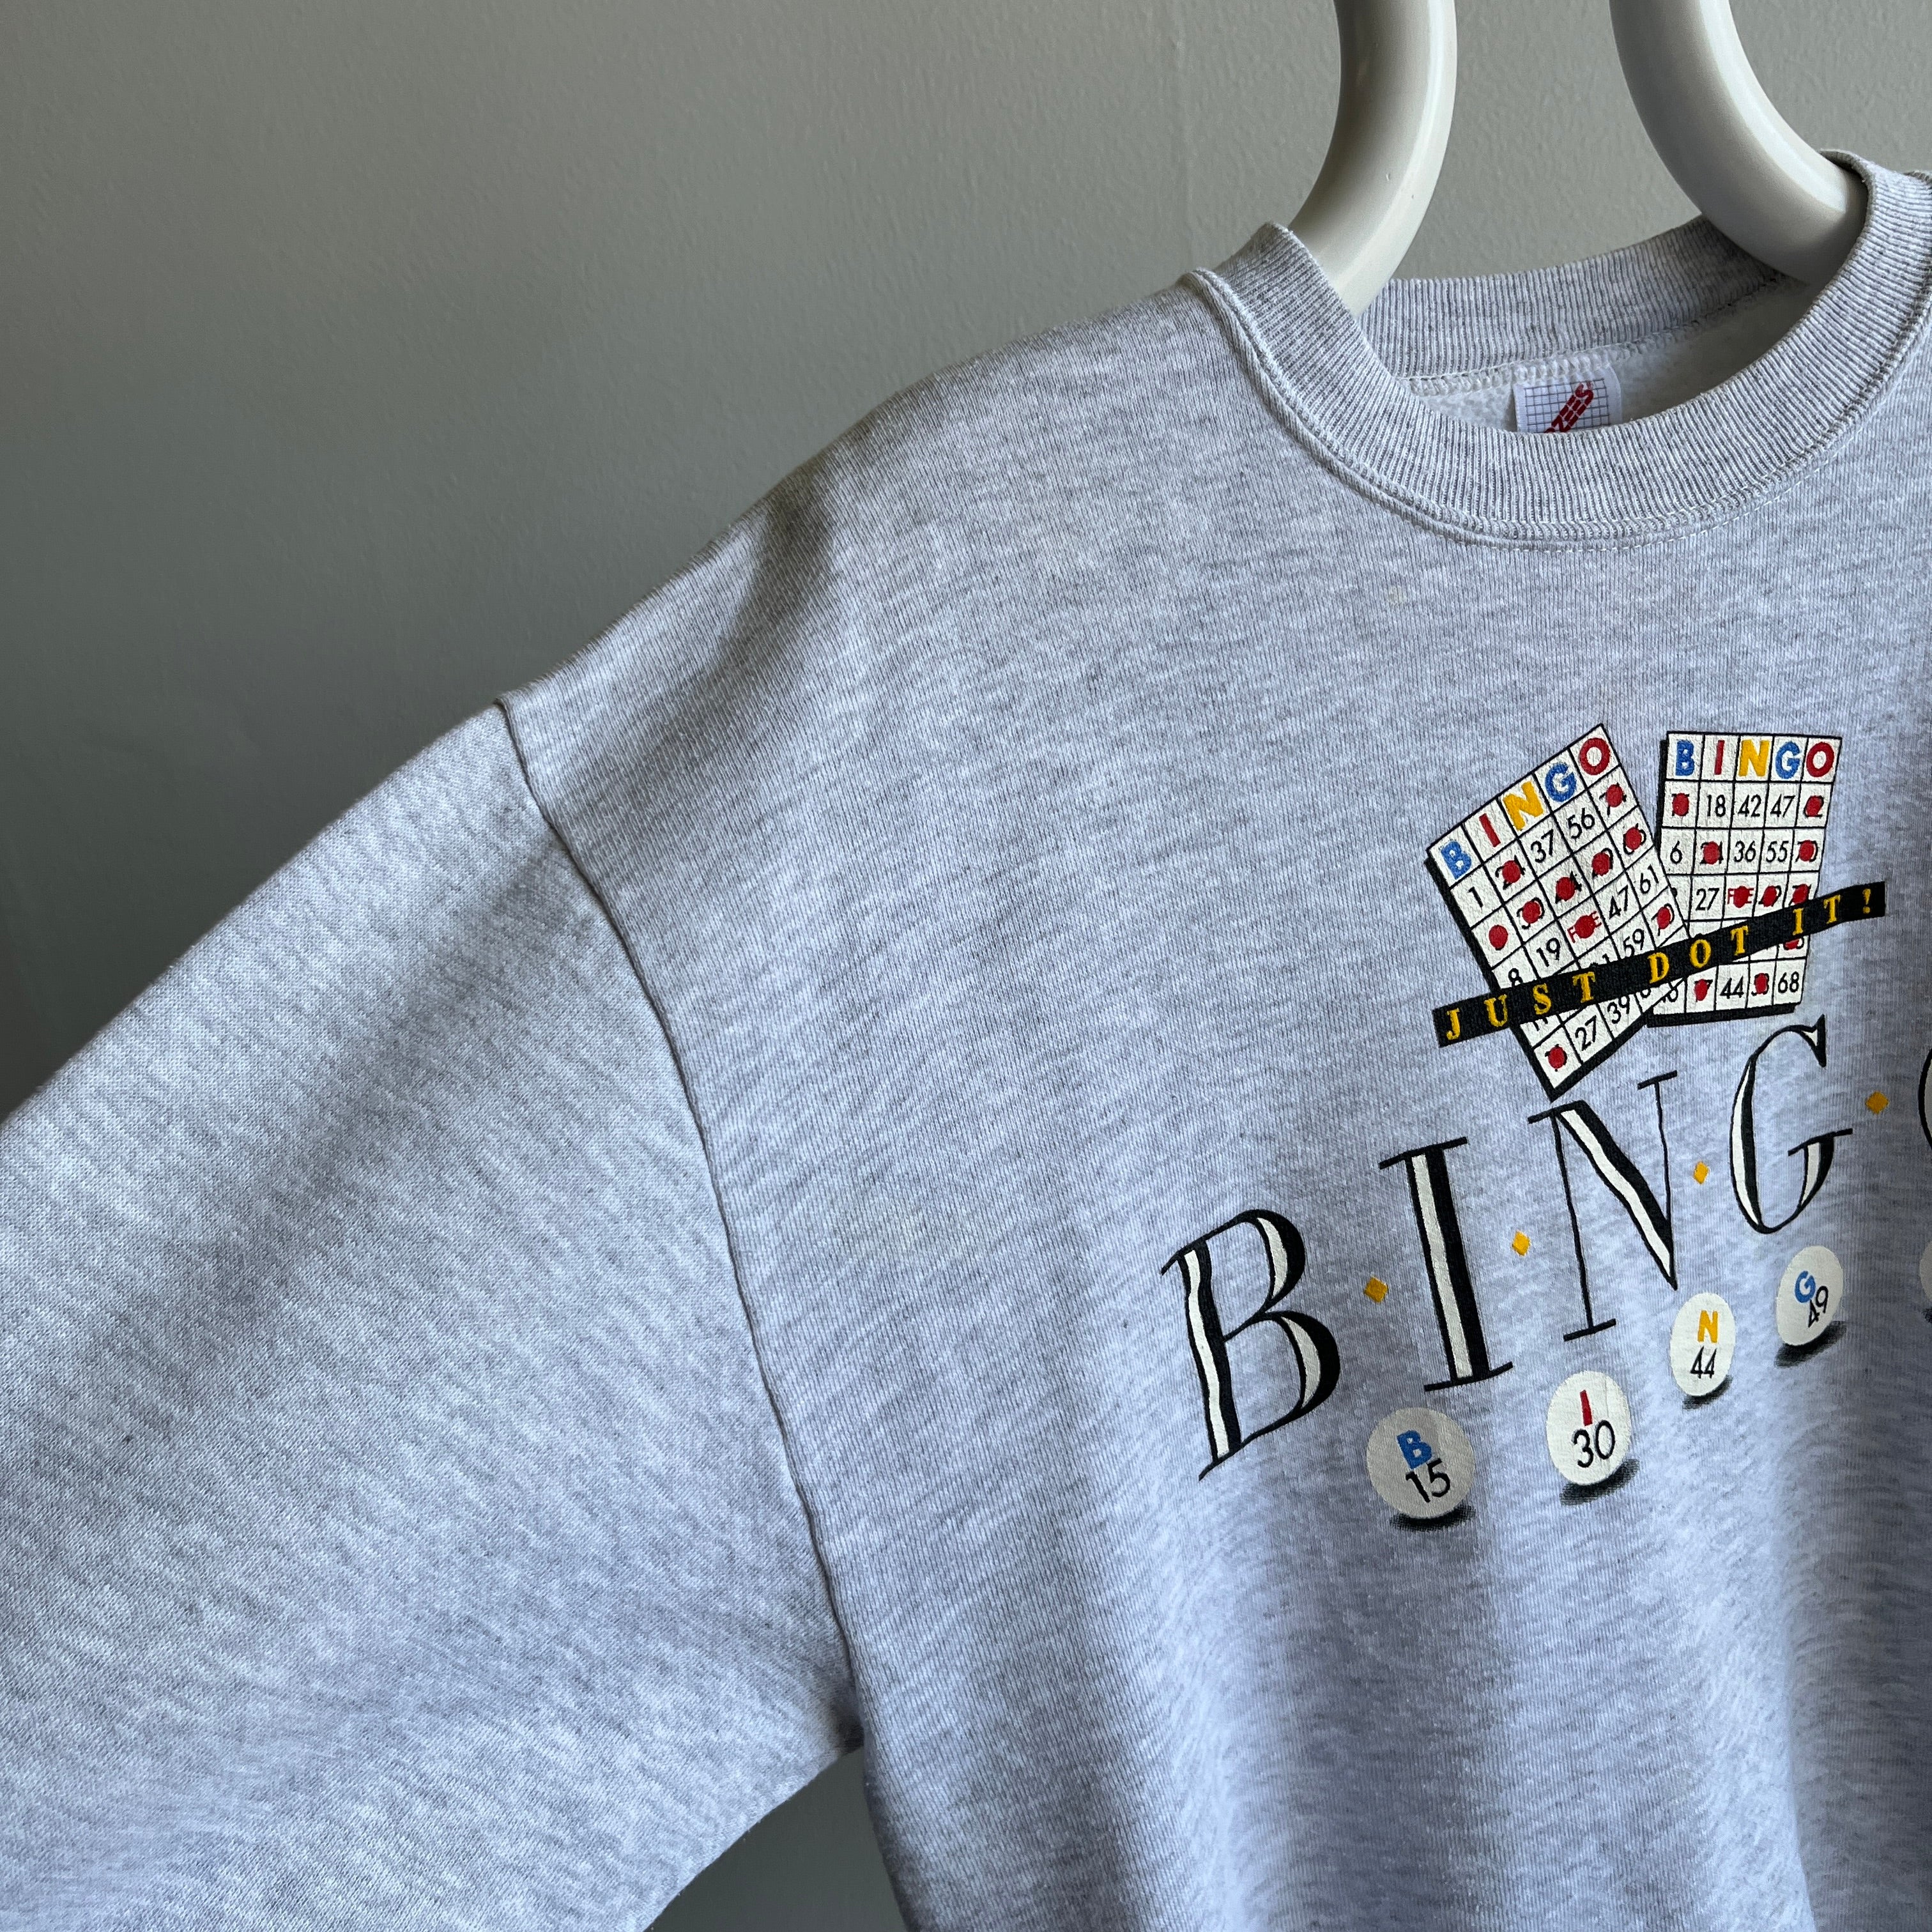 1980s Just Do It! Bingo Sweatshirt